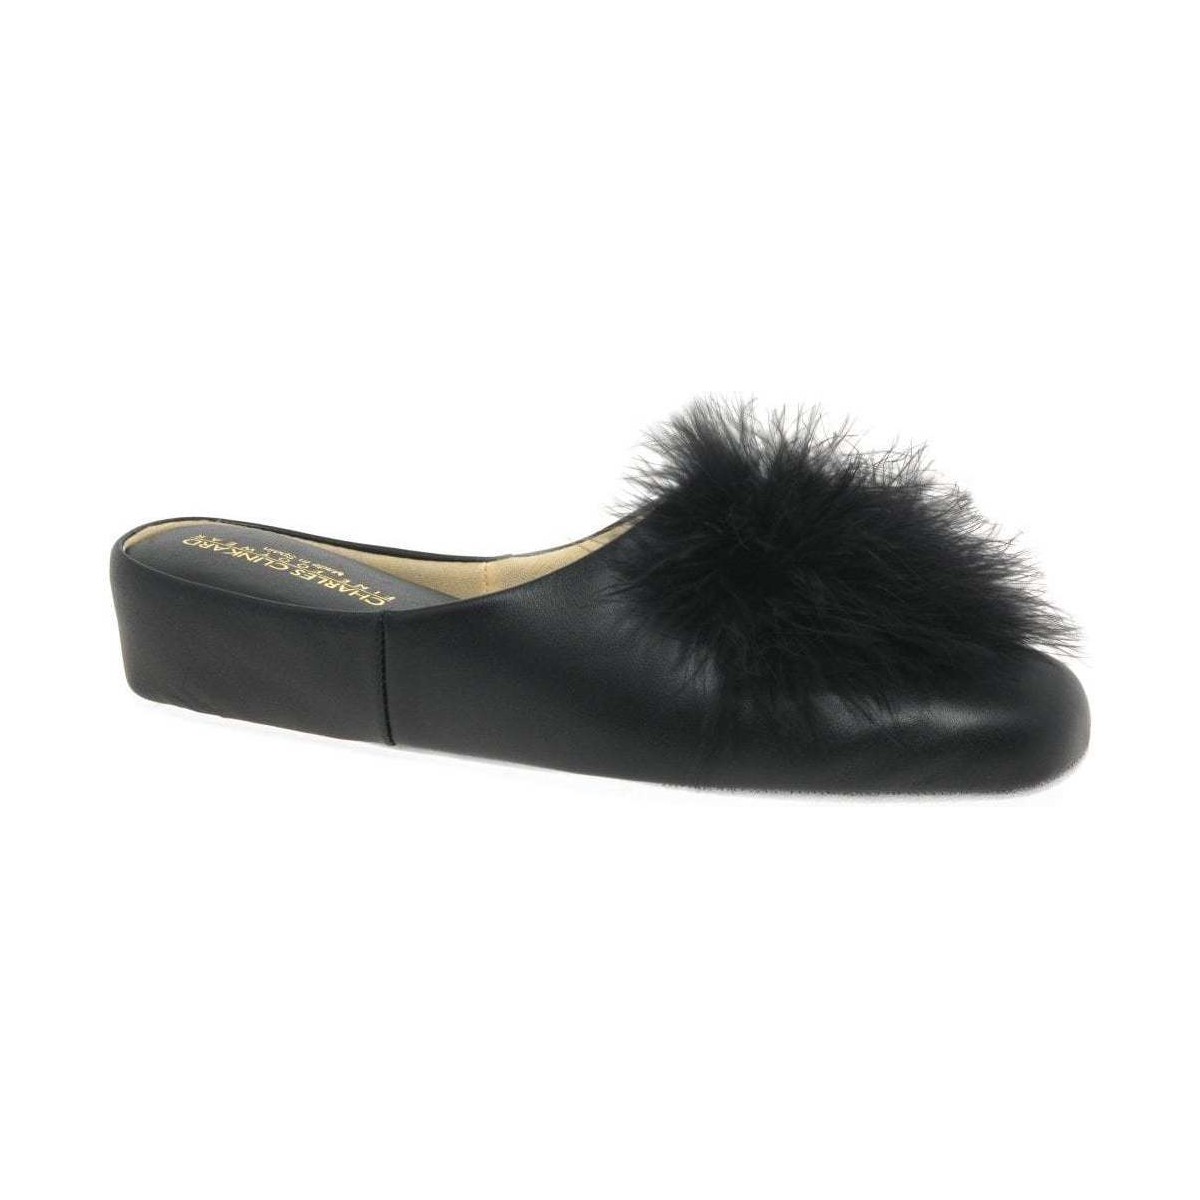 Shoes Women Slippers Relax Slippers Pom-Pom II Leather Slipper Black